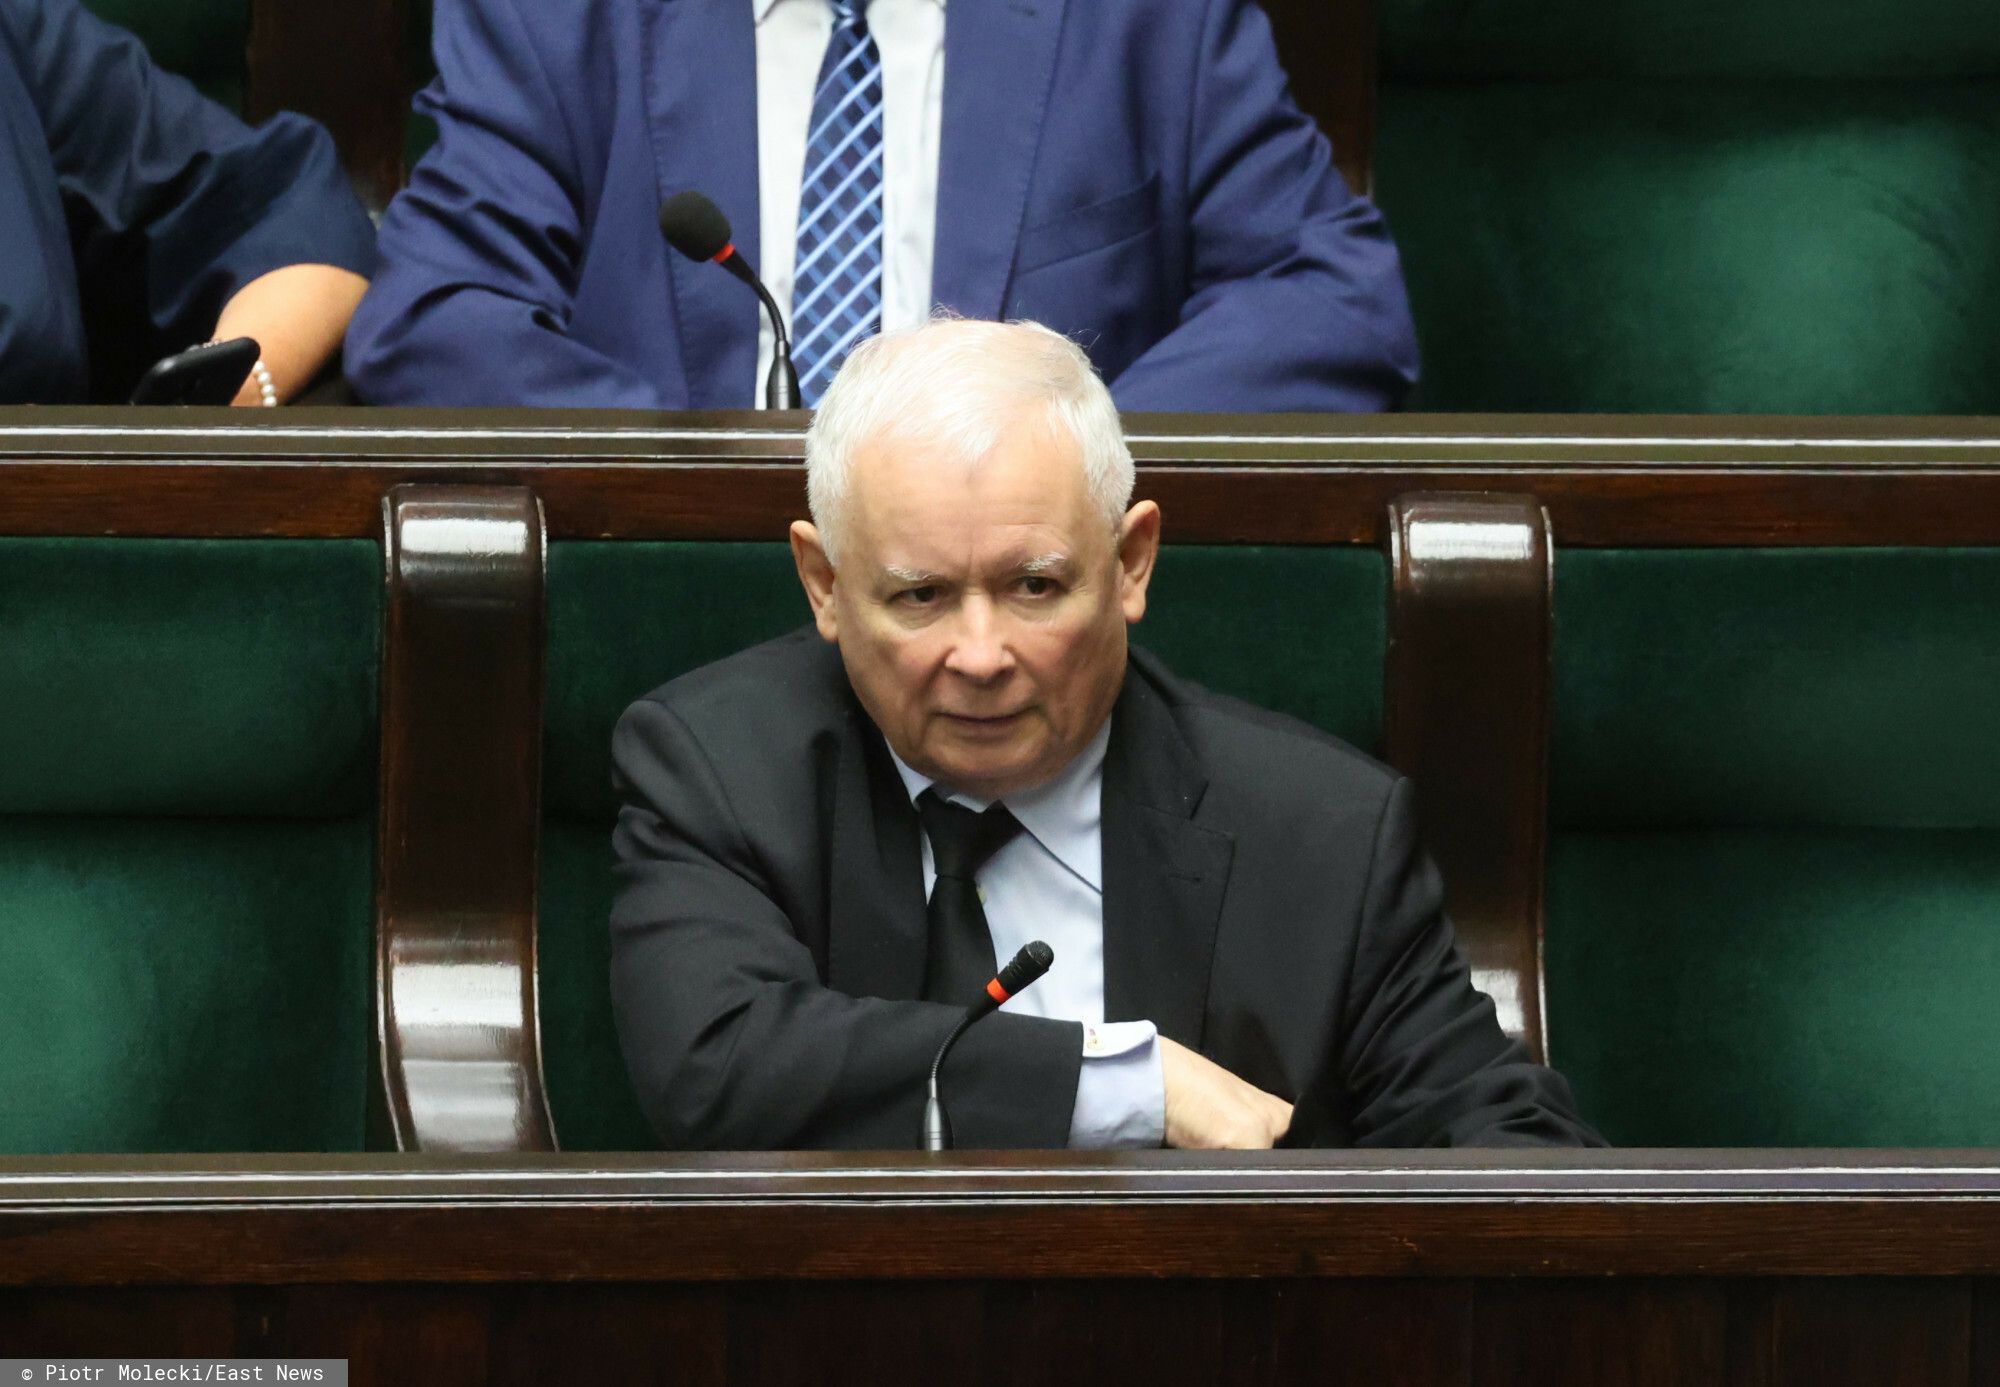 Po spotkaniu z wyborcami w Nowym Targu, Jarosława Kaczyńskiego żegnał wściekły tłum.